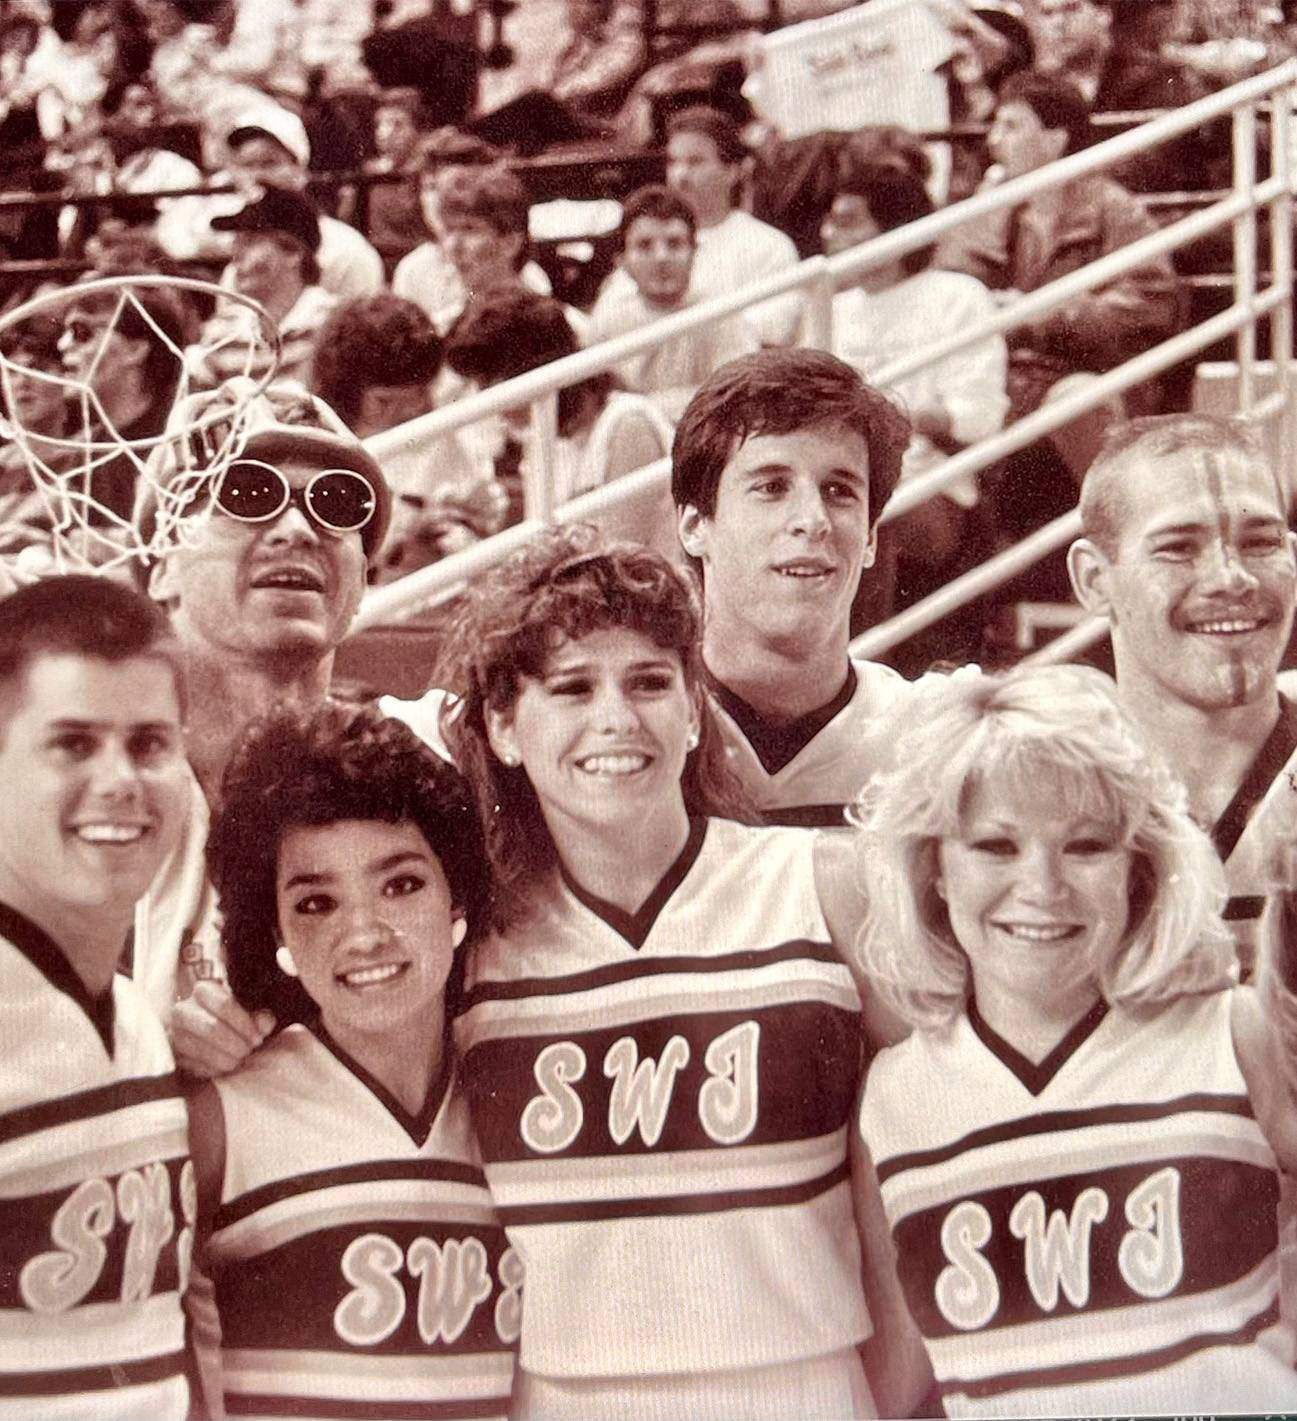 old photo of group of cheerleaders